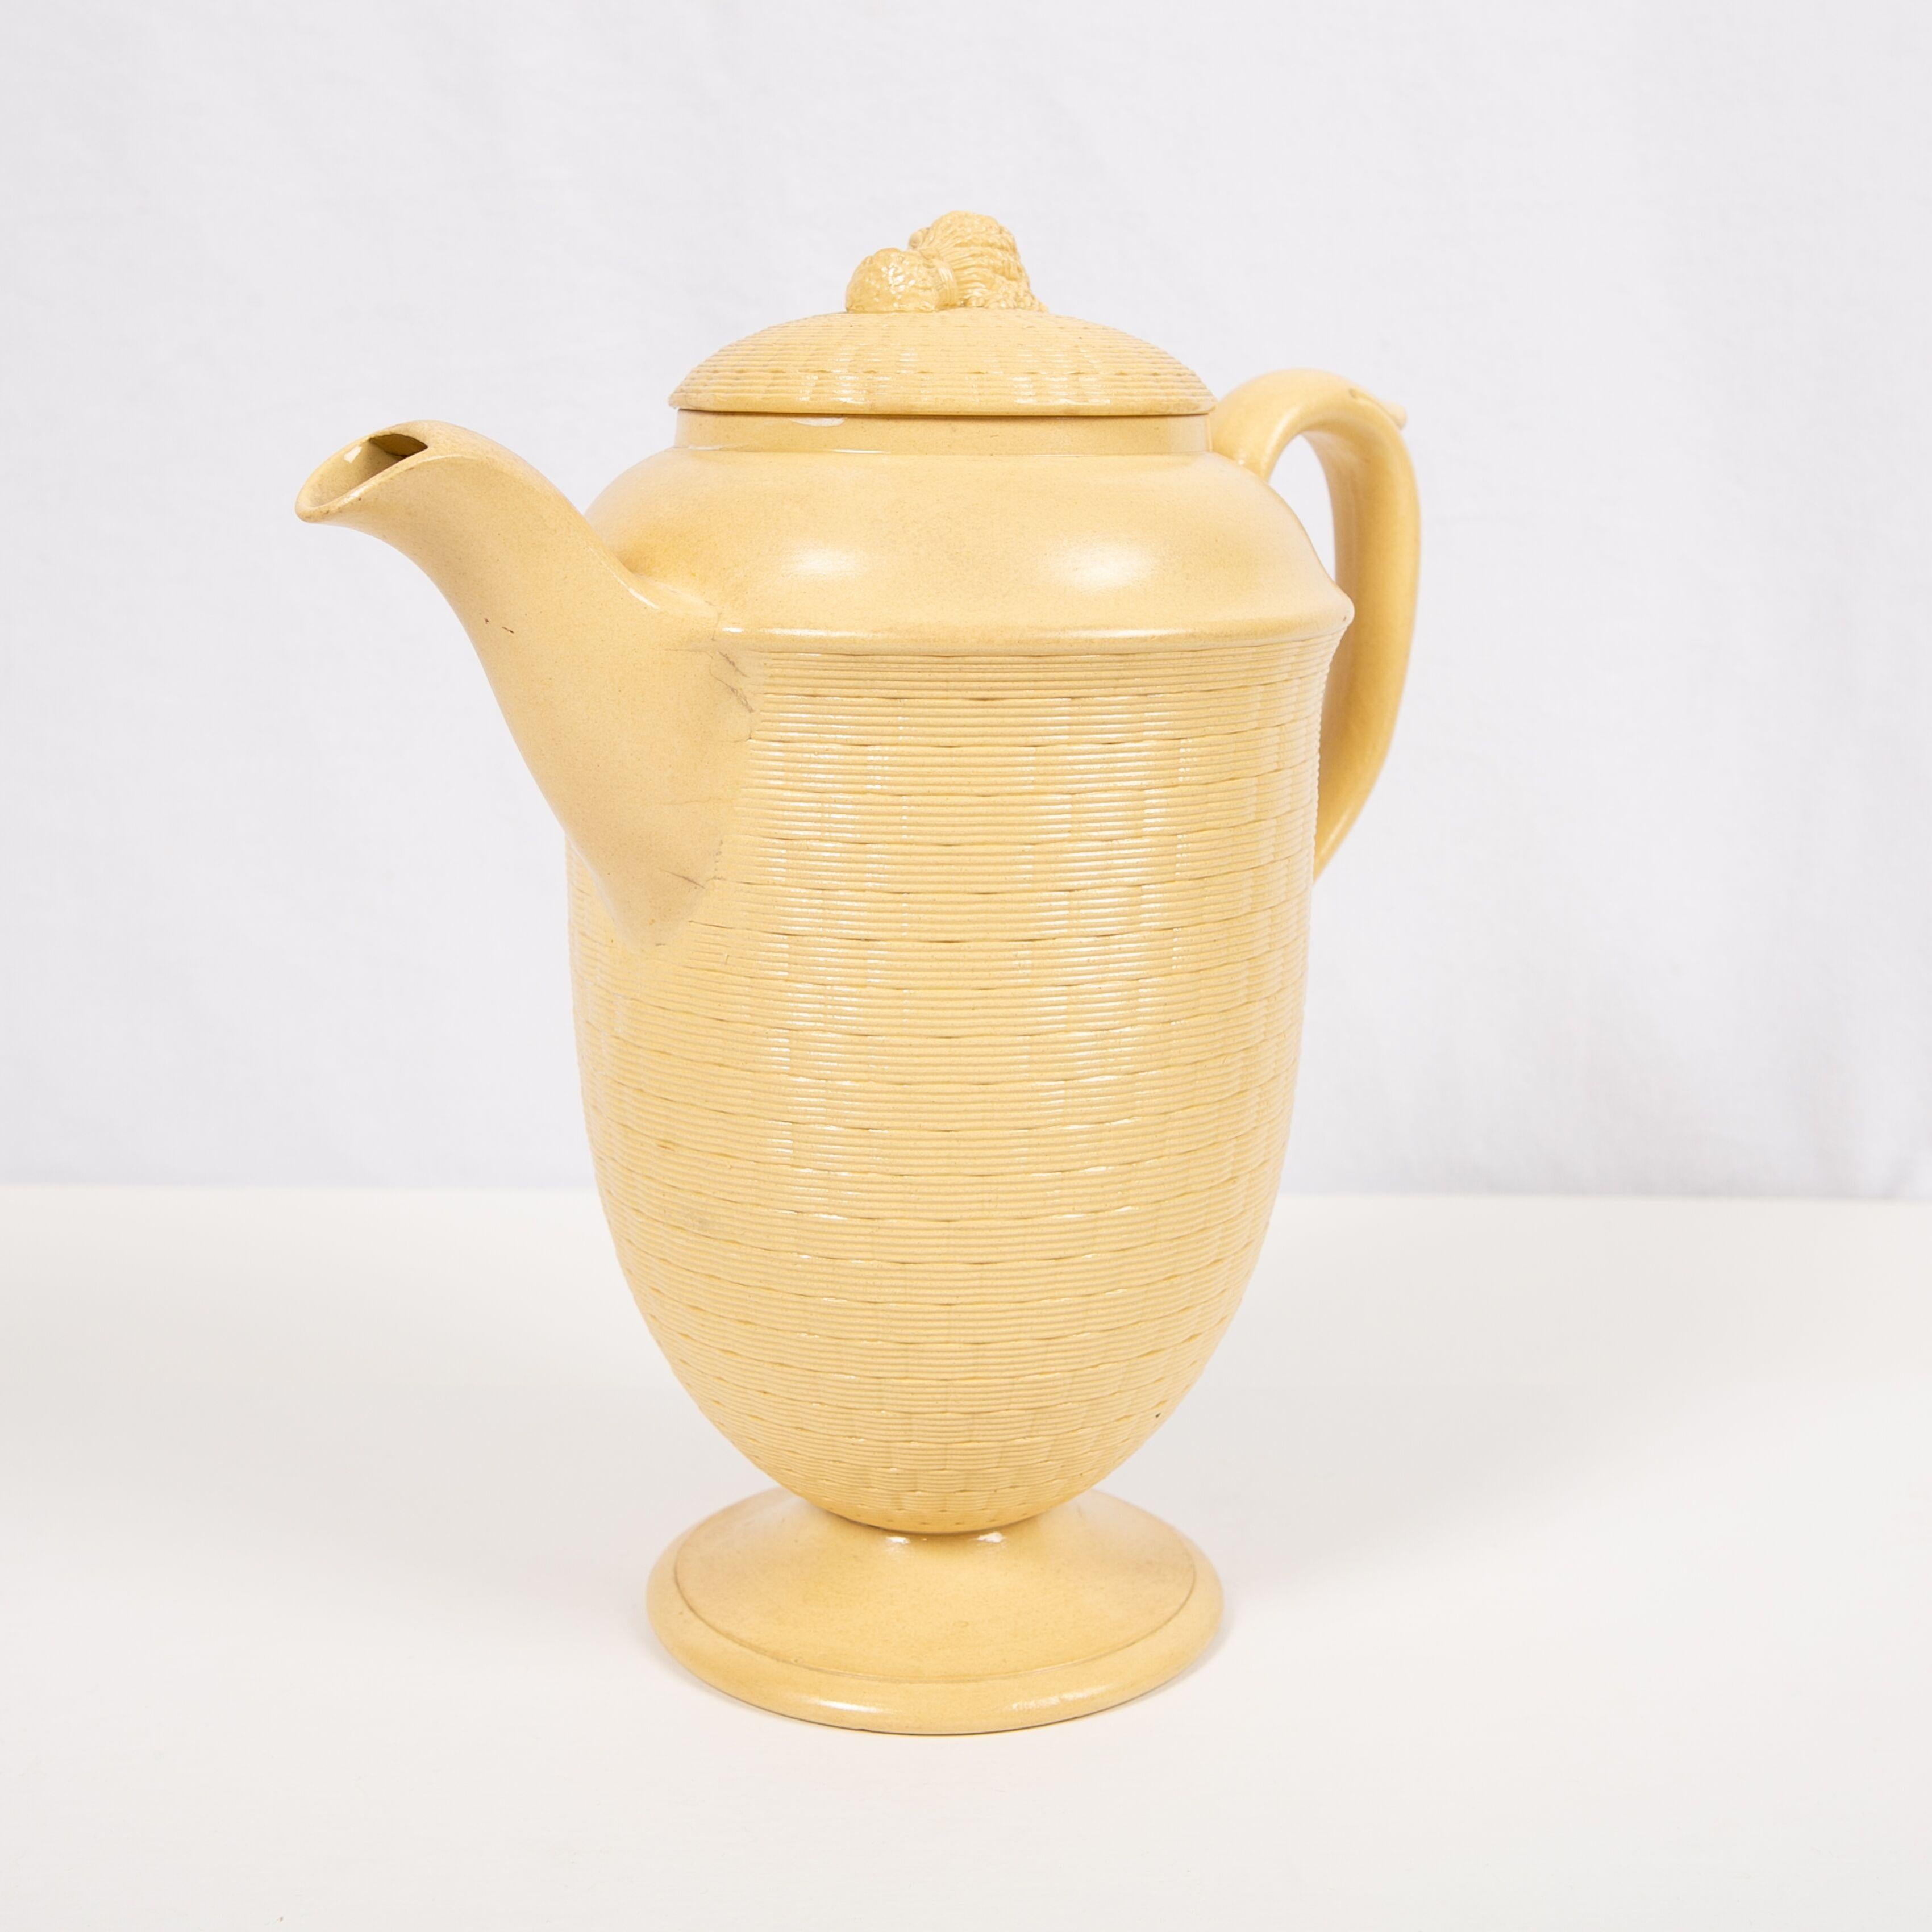 Molded Large Antique Wedgwood Coffee Pot of Glazed Cane-Yellow Stoneware, circa 1830